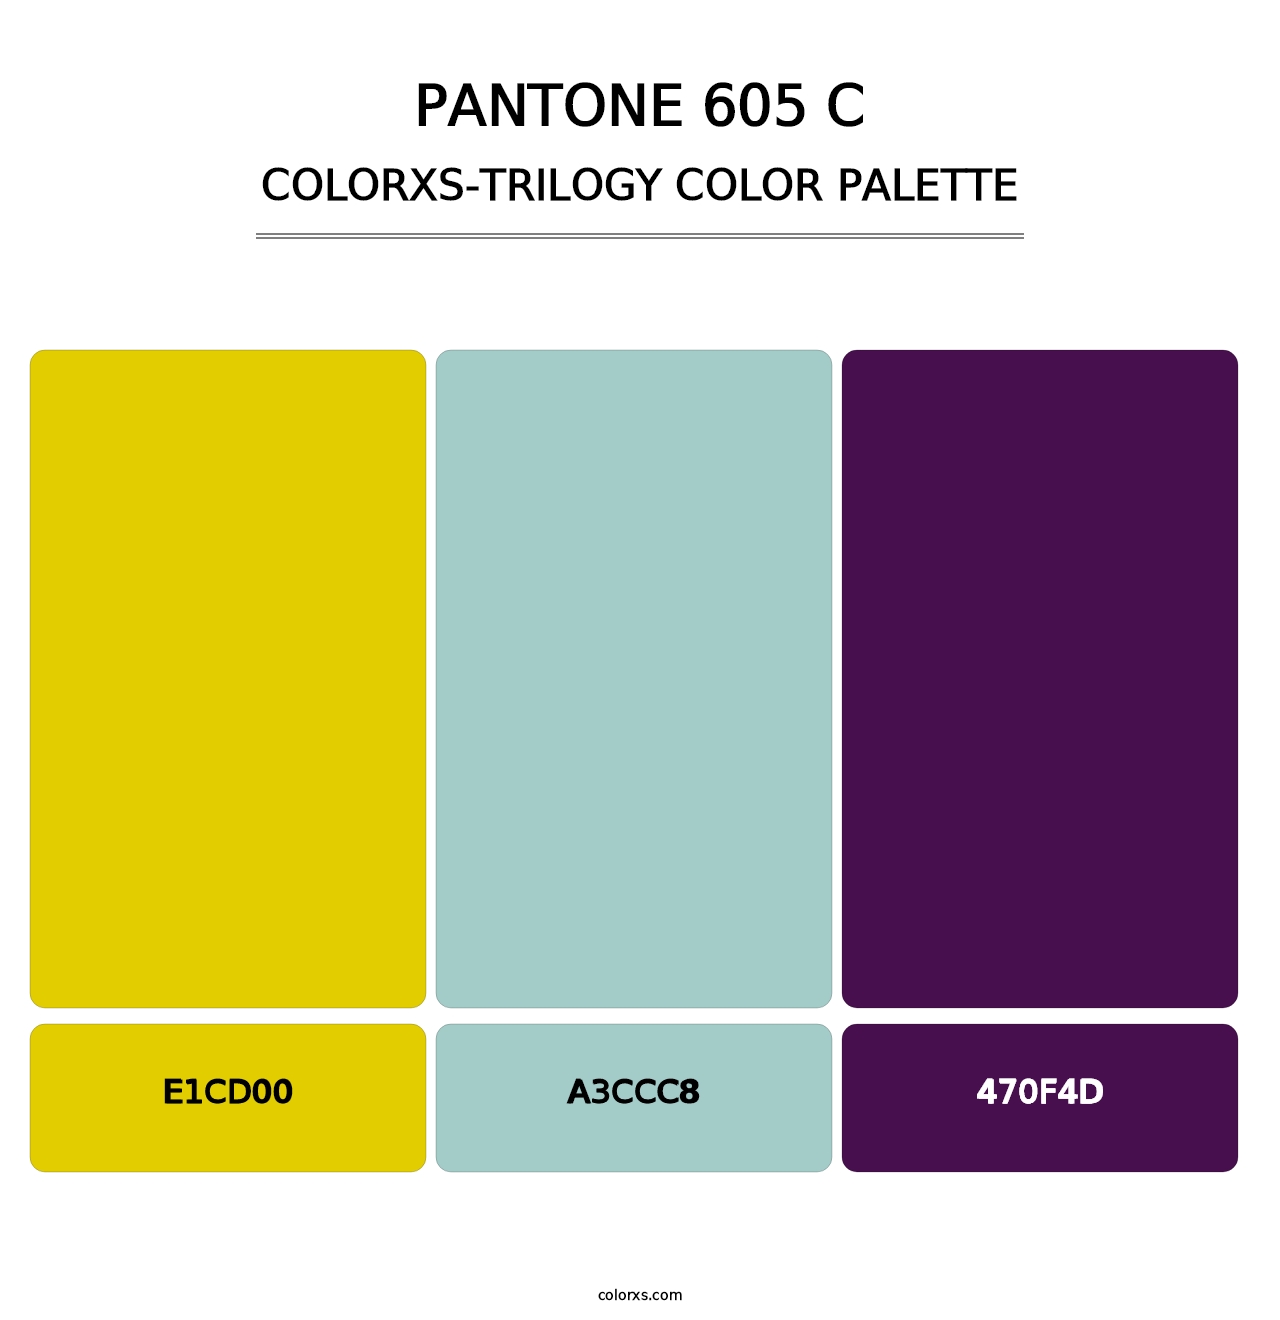 PANTONE 605 C - Colorxs Trilogy Palette